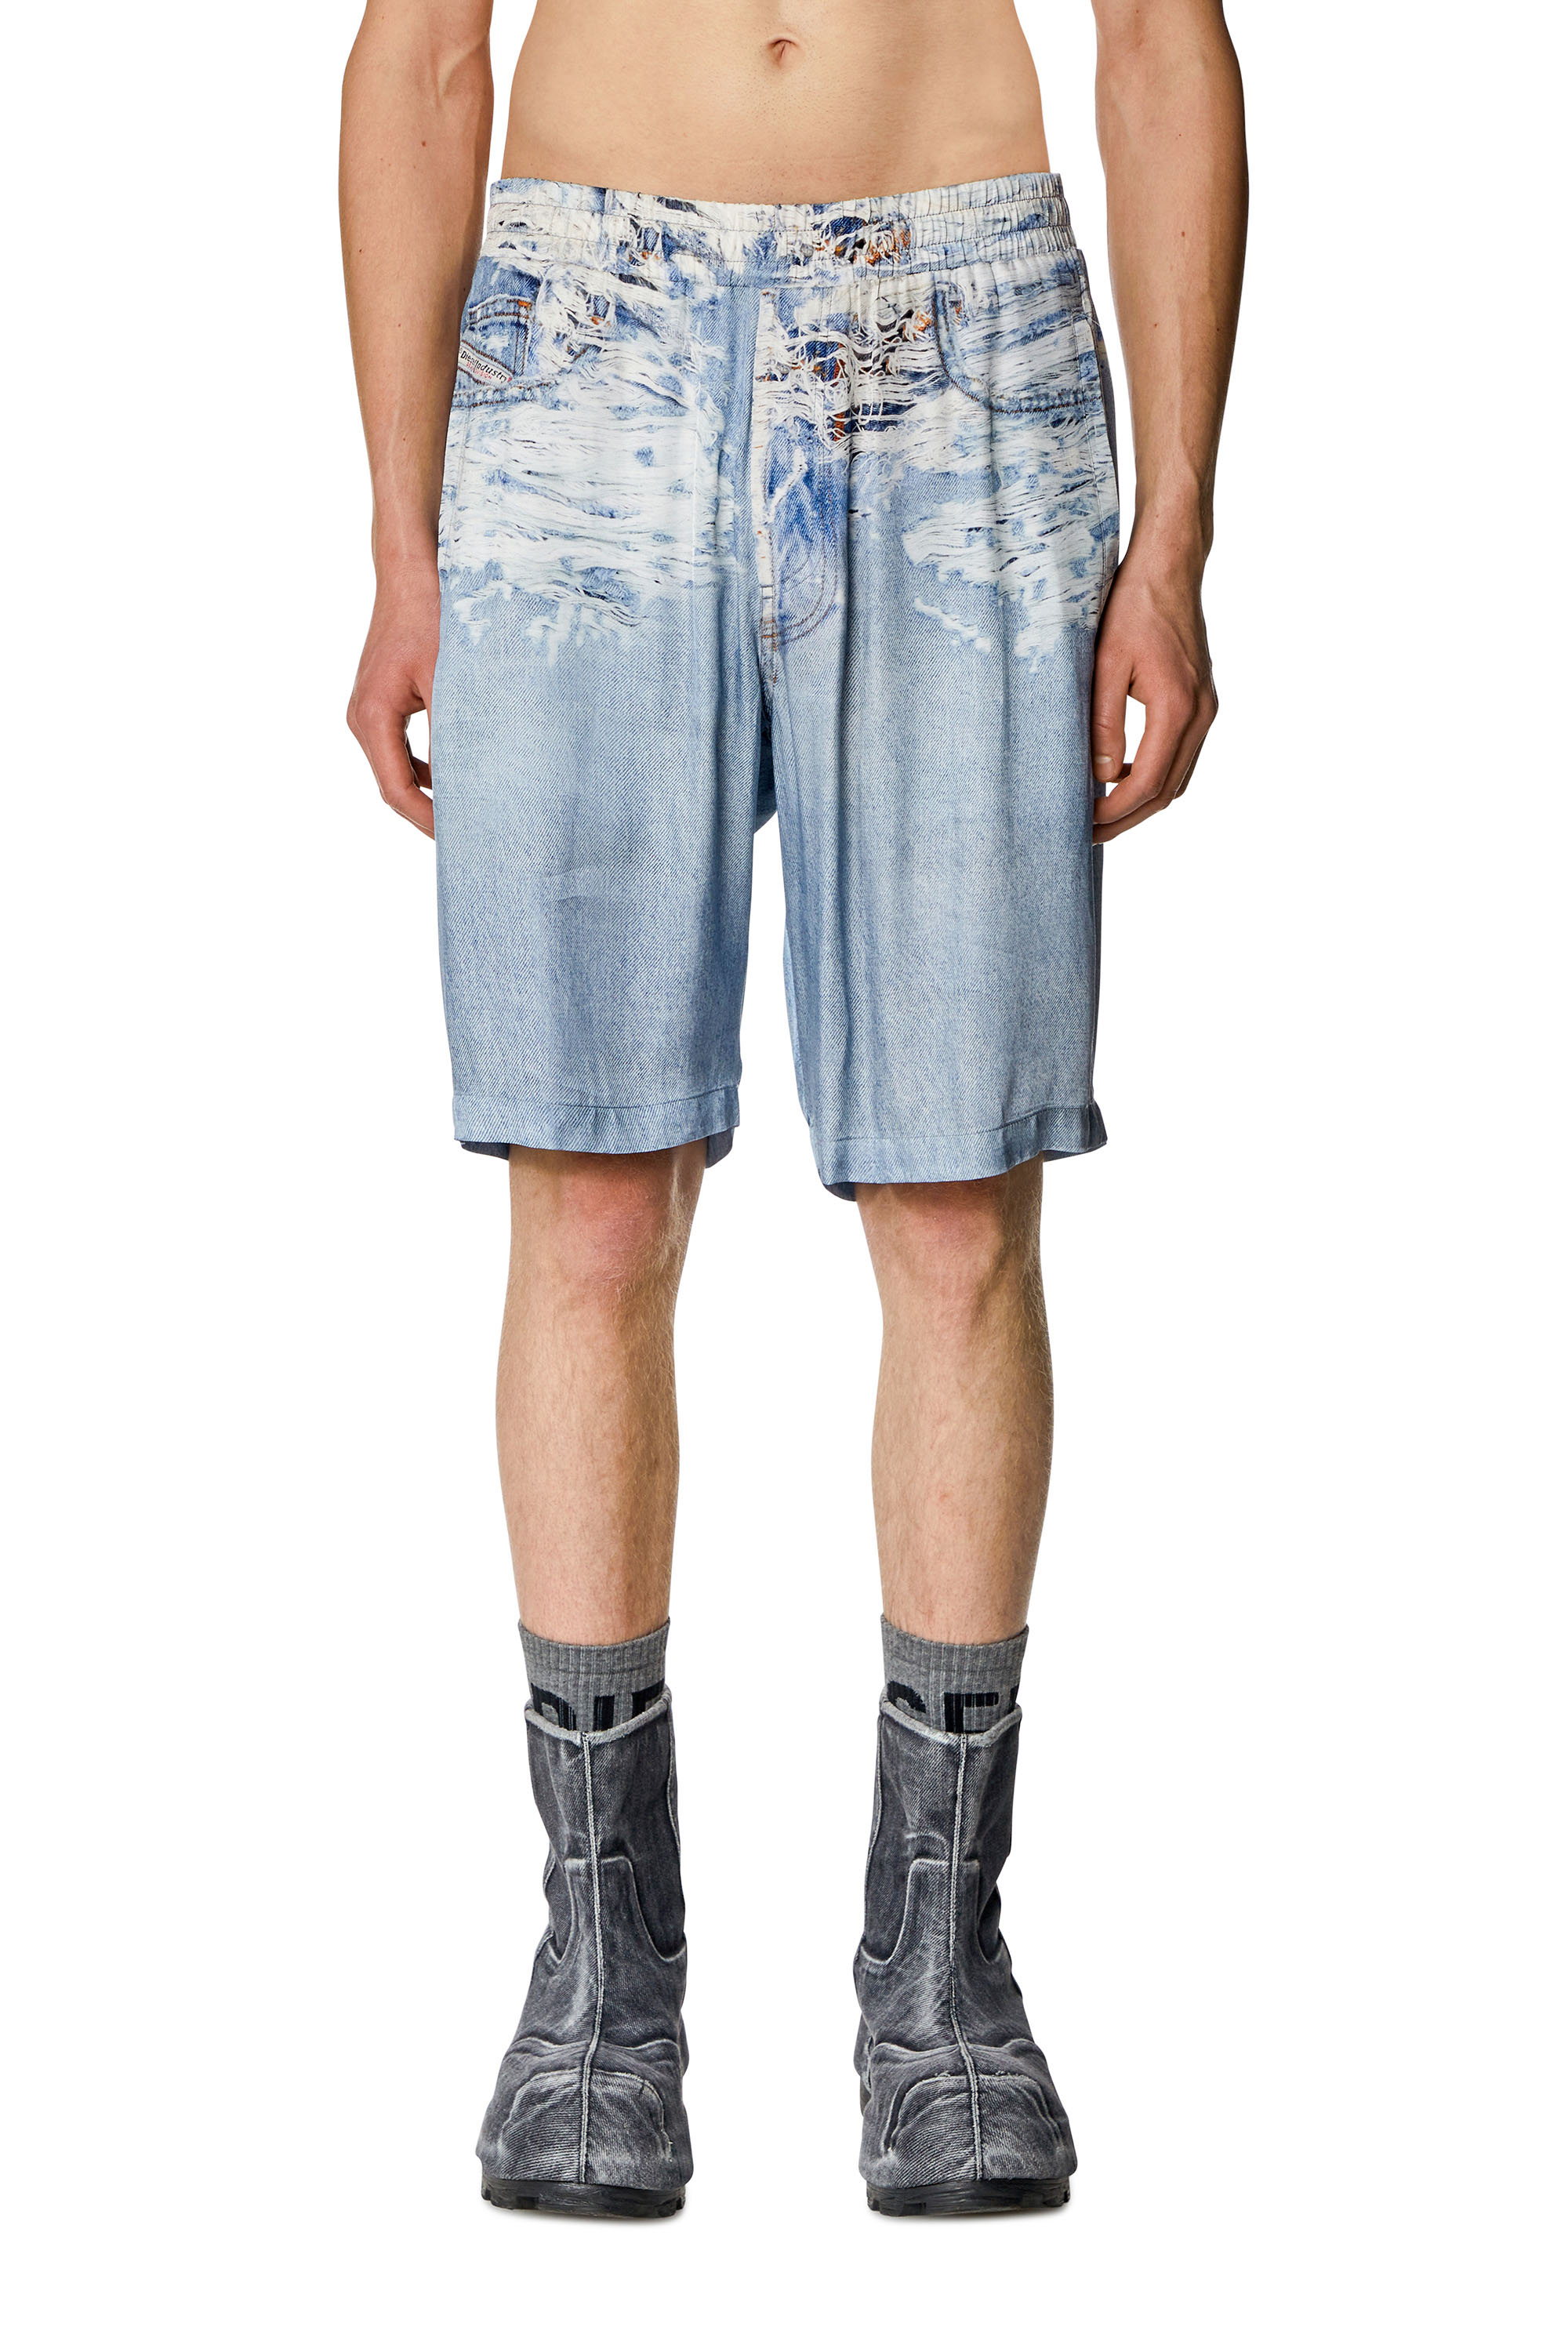 Diesel - Pantalones cortos con estampado en denim con Tiger Breaks - Shorts - Hombre - Azul marino